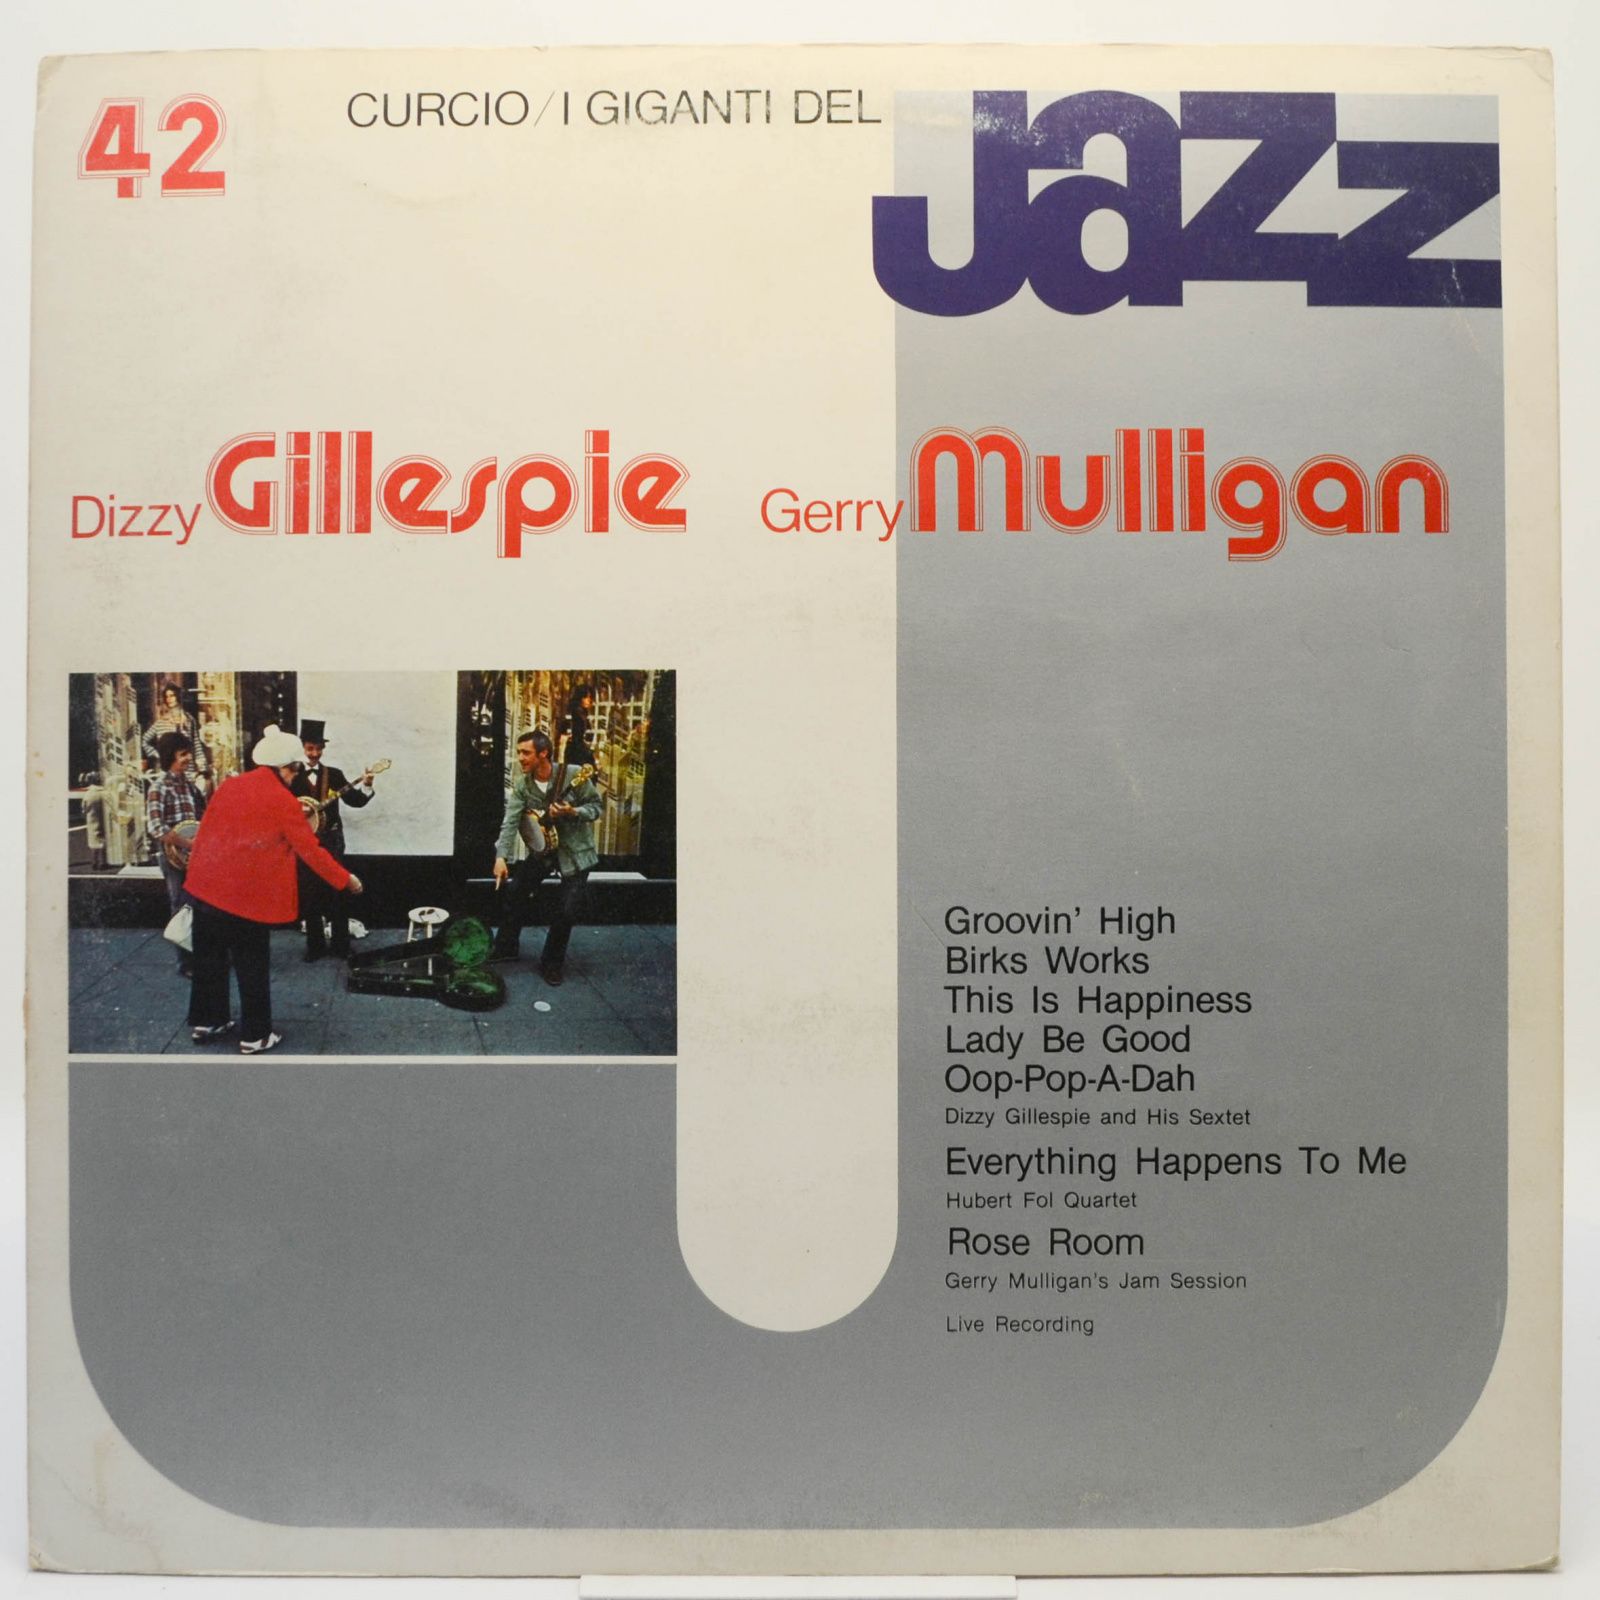 I Giganti Del Jazz Vol. 42, 1981